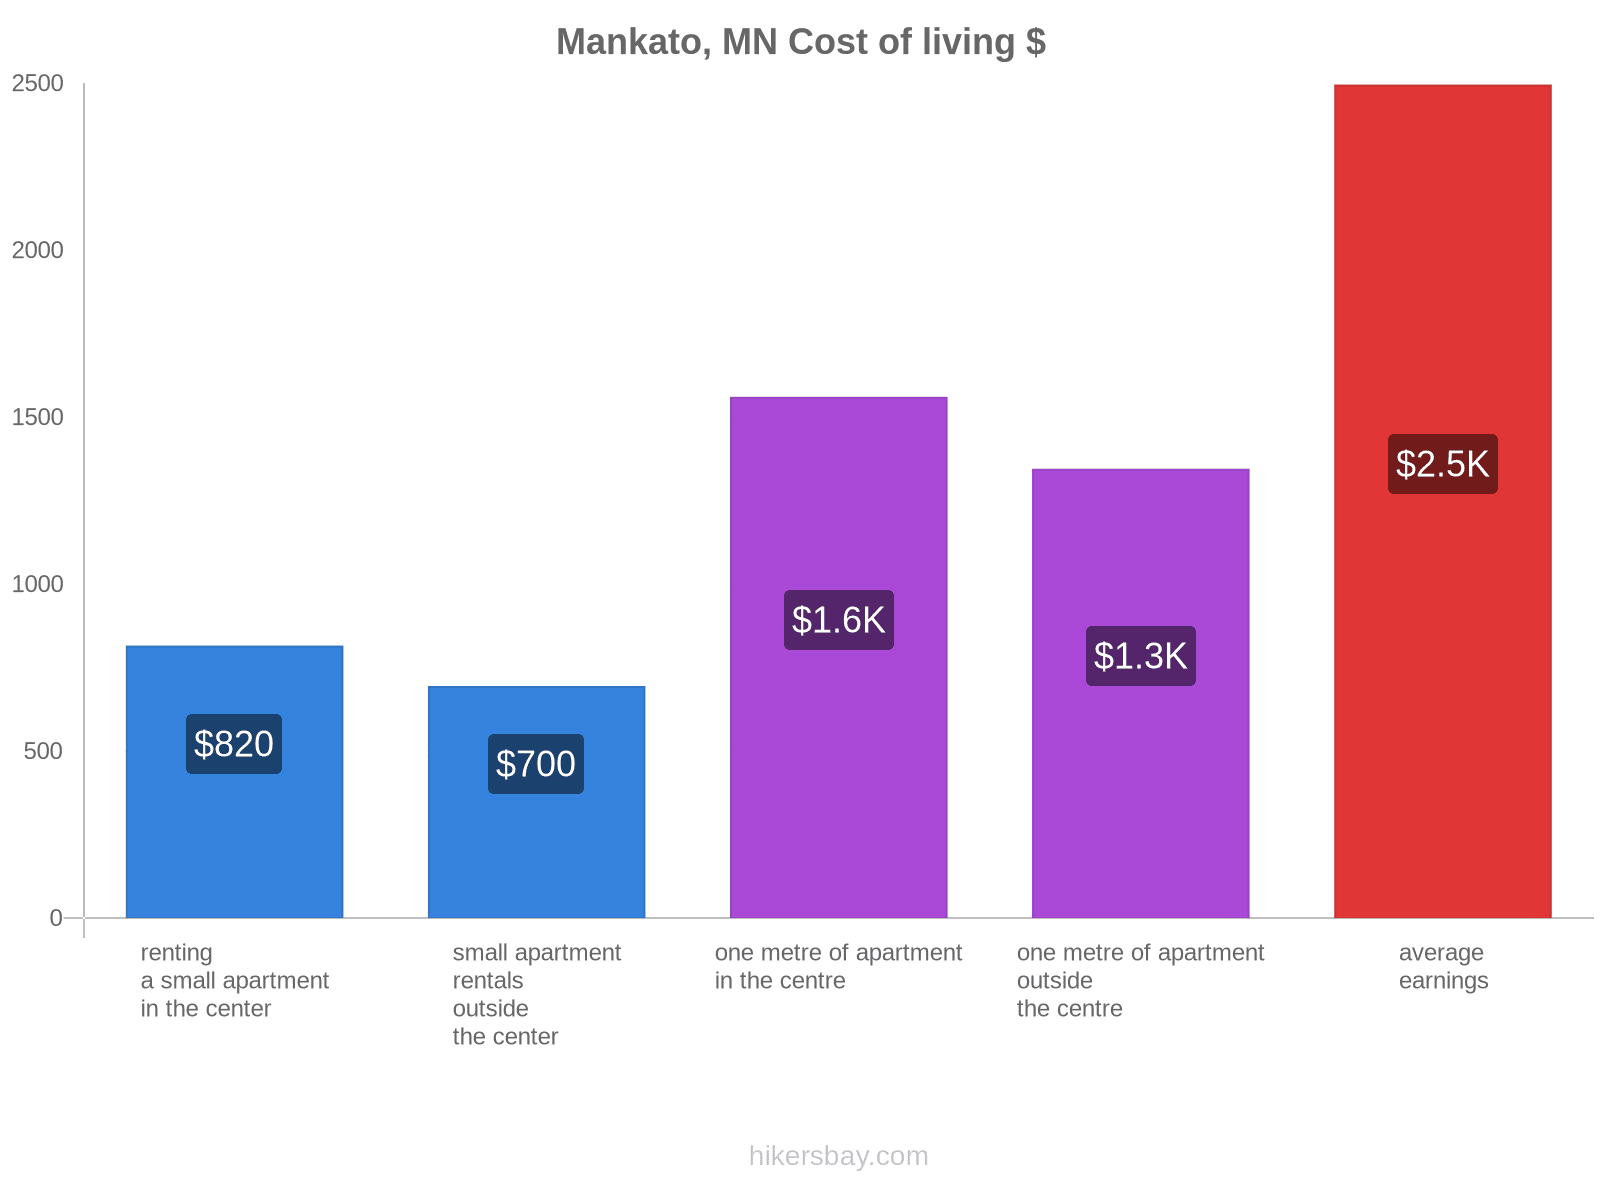 Mankato, MN cost of living hikersbay.com